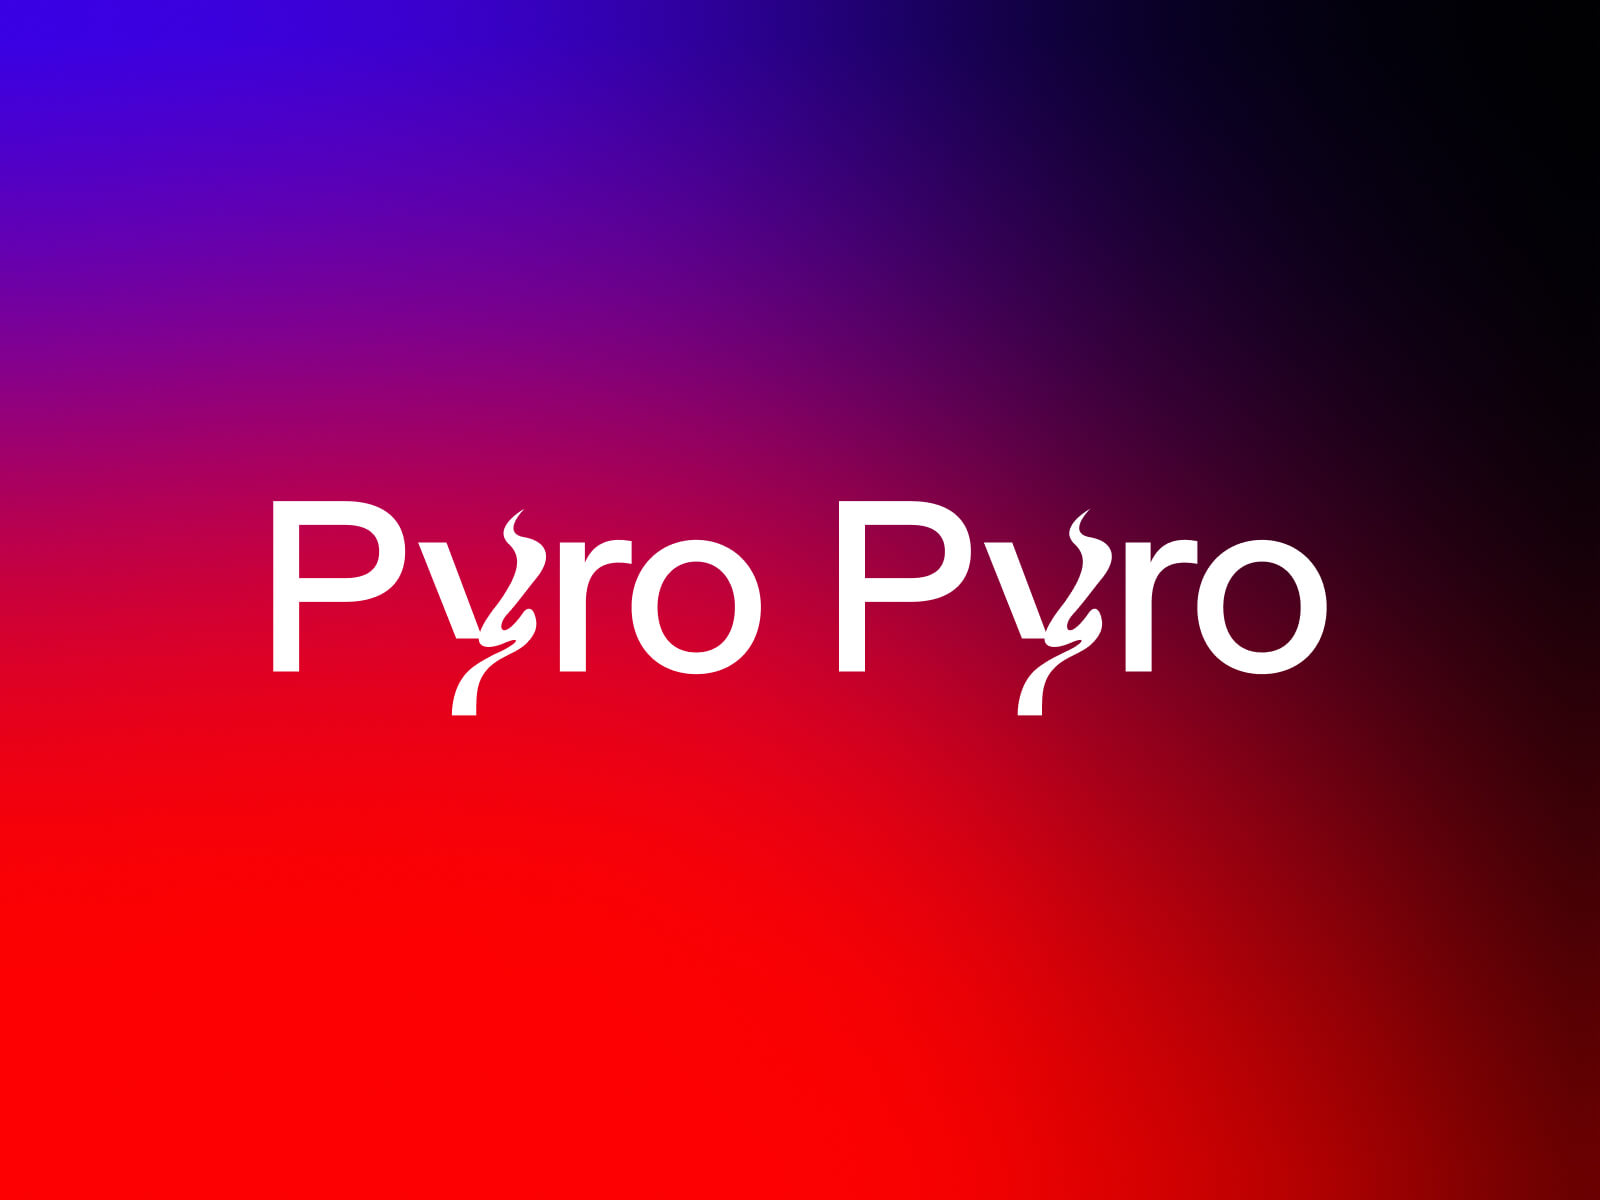 Pyro Pyro